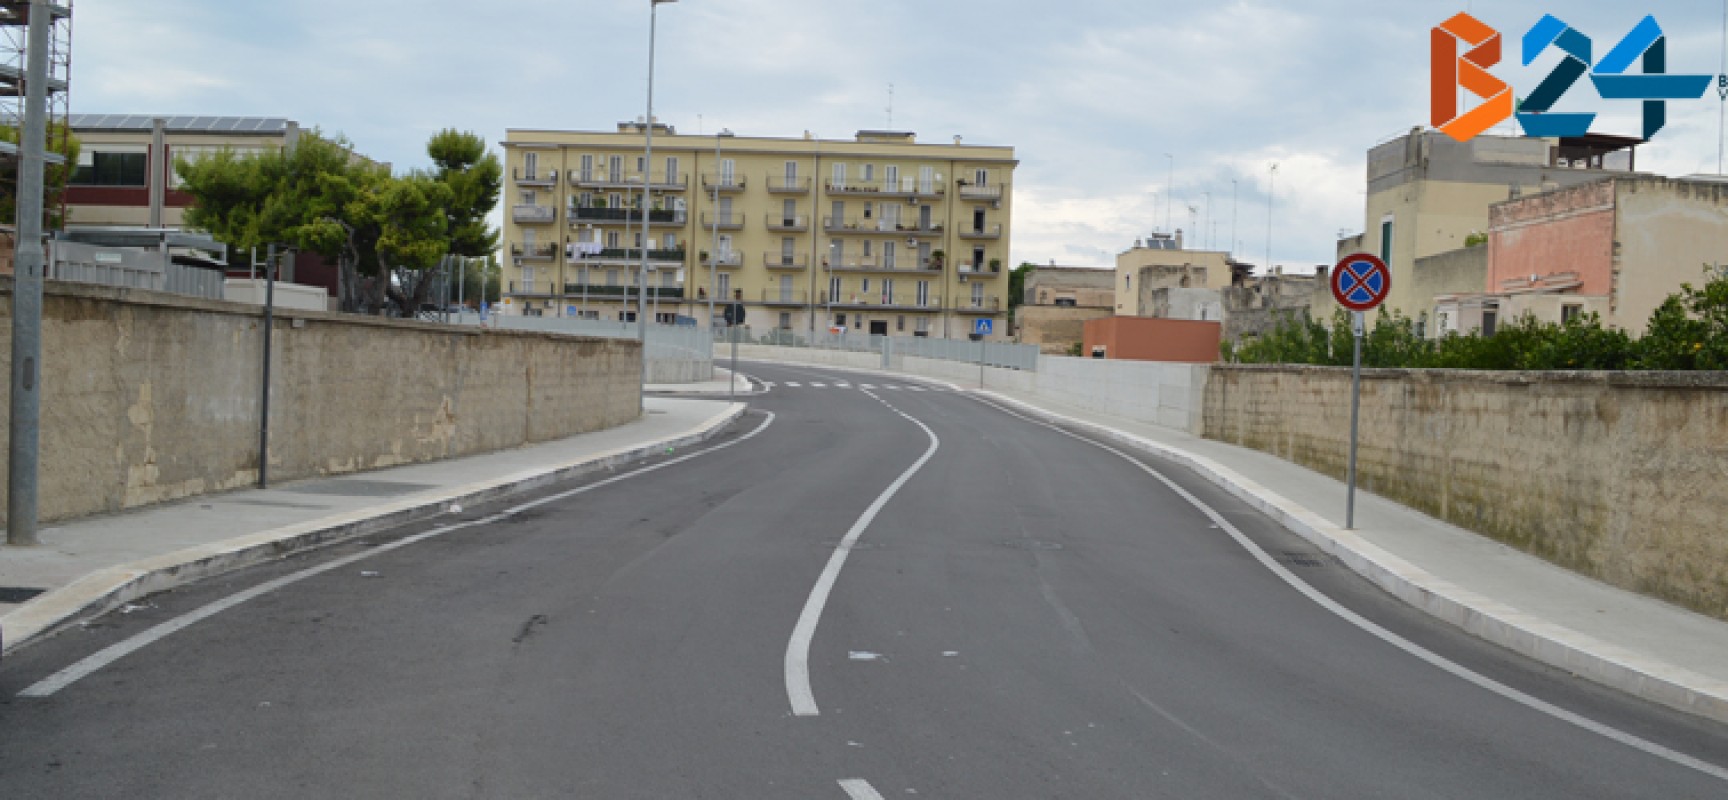 Via Maggiore La Notte, dossi artificiali e limite a 30 km/h ma i cassonetti rimangono sul marciapiede